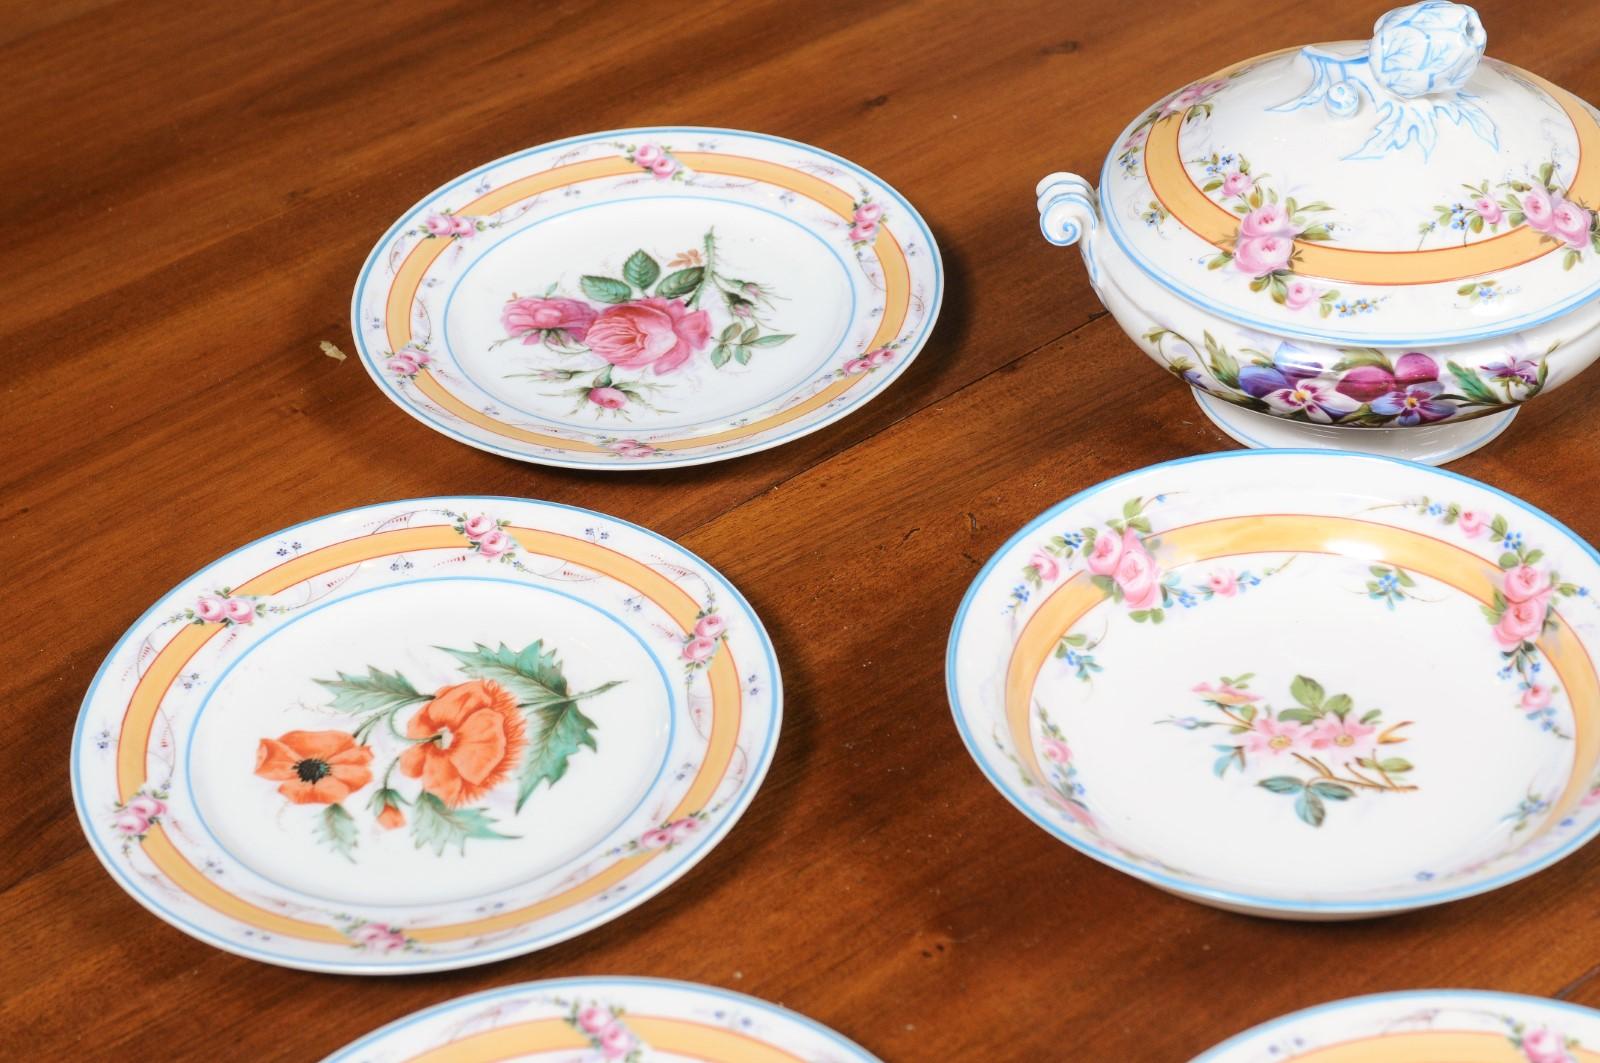 Porcelaine de Paris 19th Century Floral Dish Set with Casserole and Plates For Sale 4